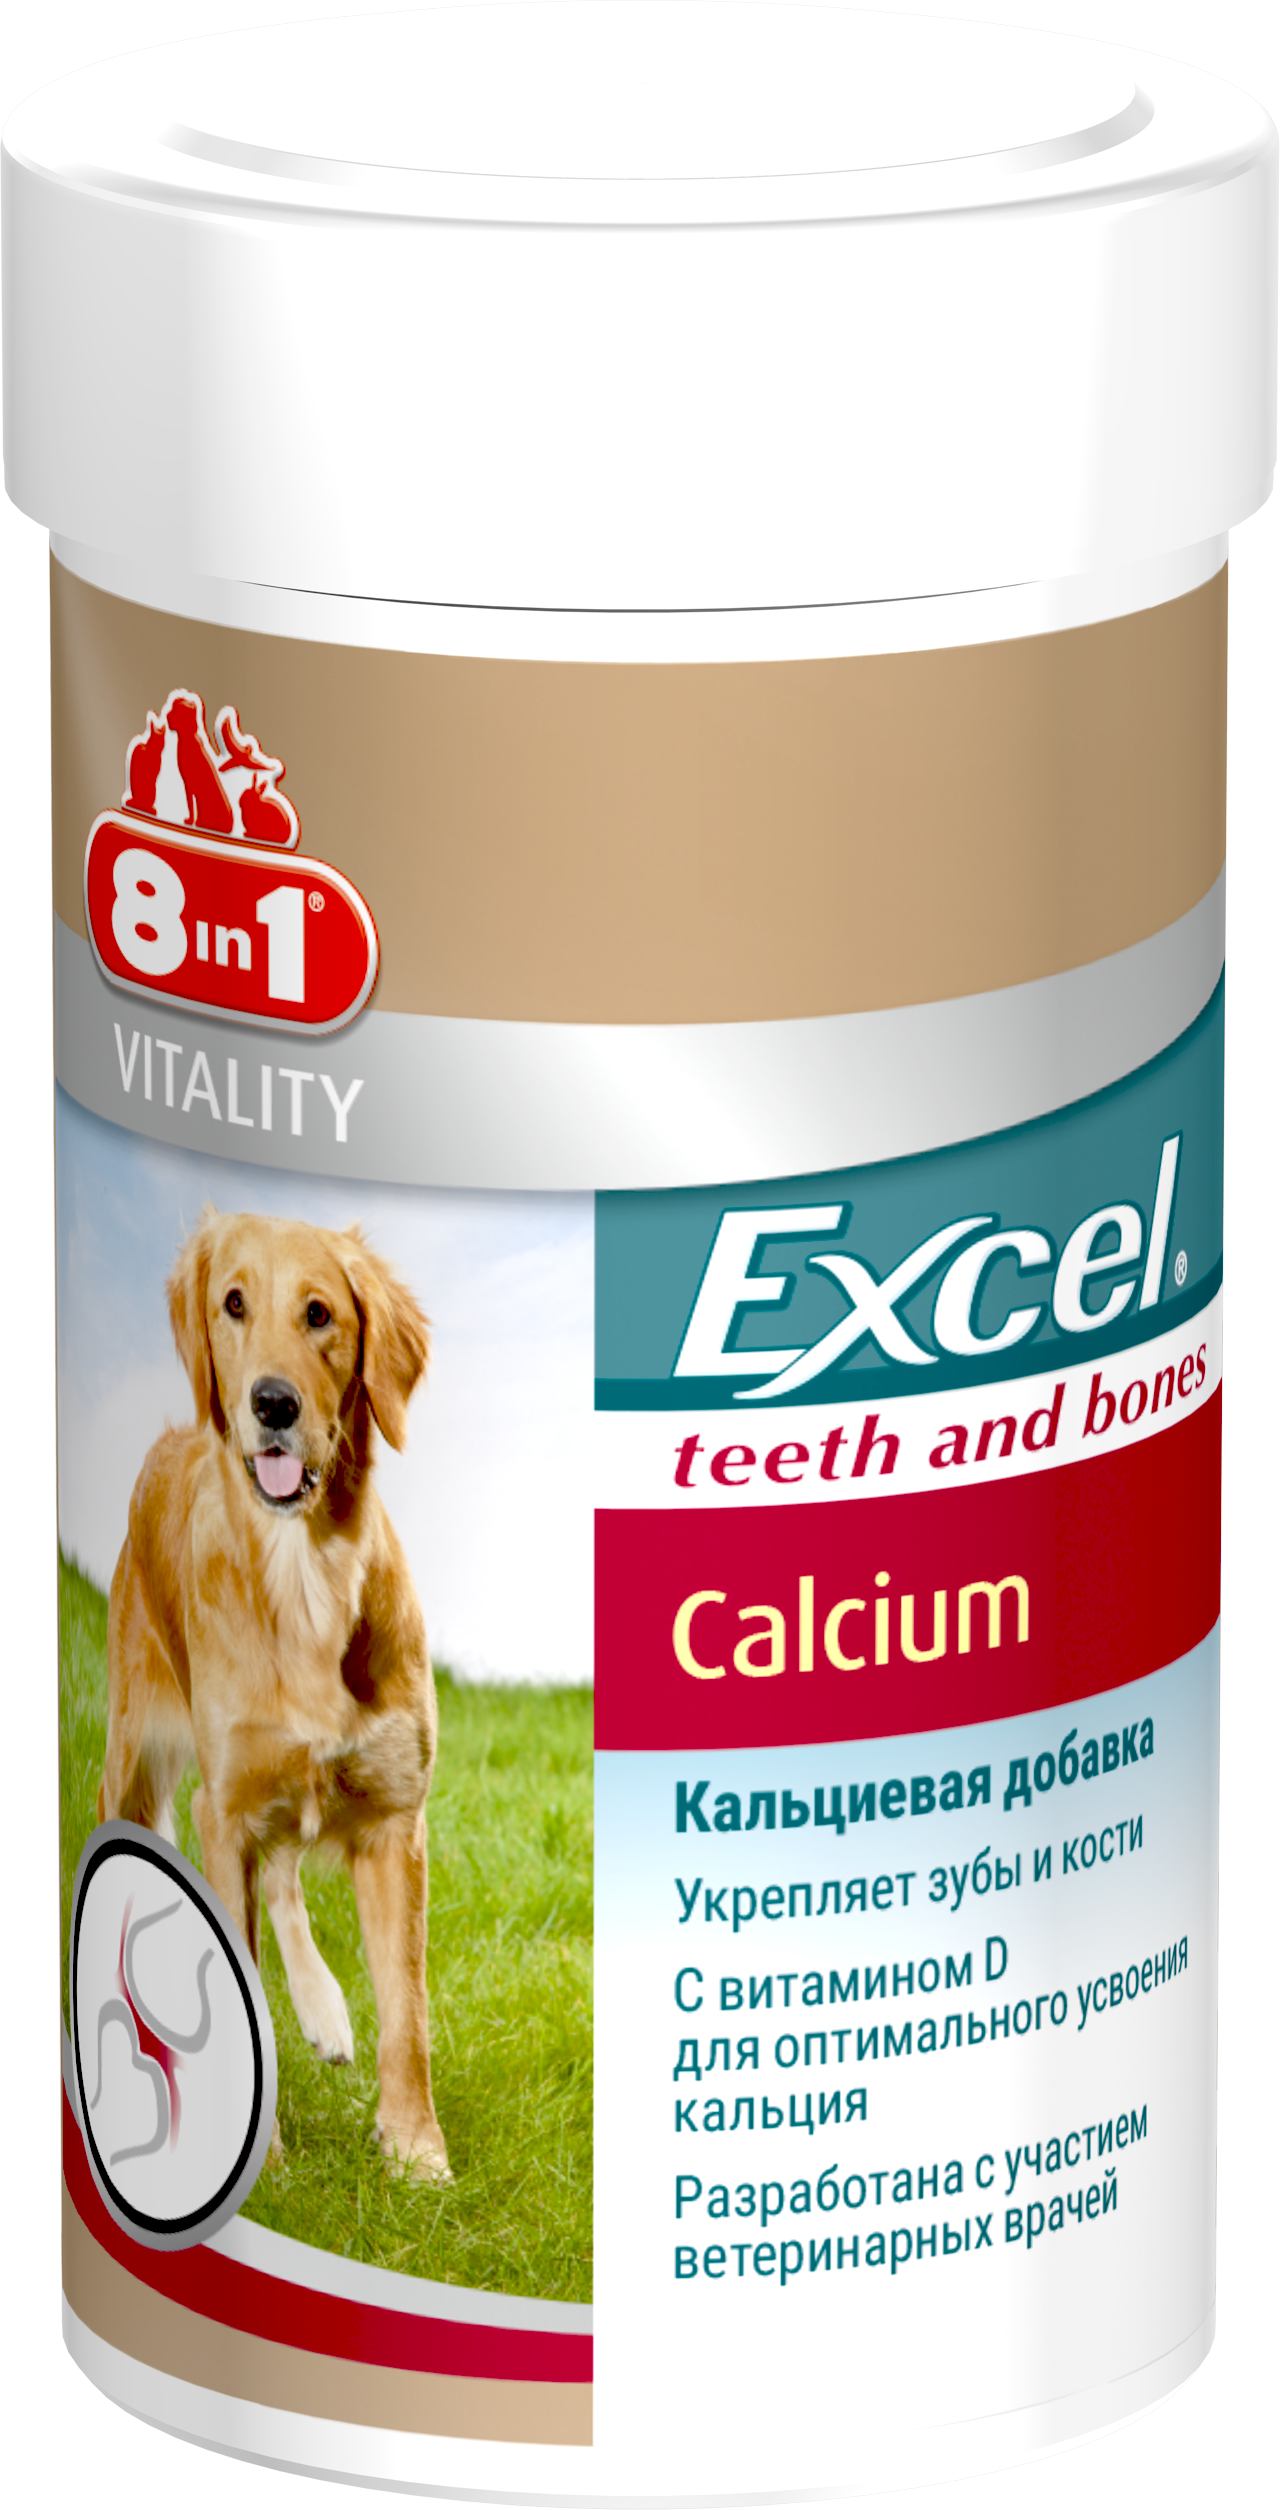 Кальцій для собак 8in1 Excel Calcium, 990 г, 1700 шт. (660893 /115564) - фото 1